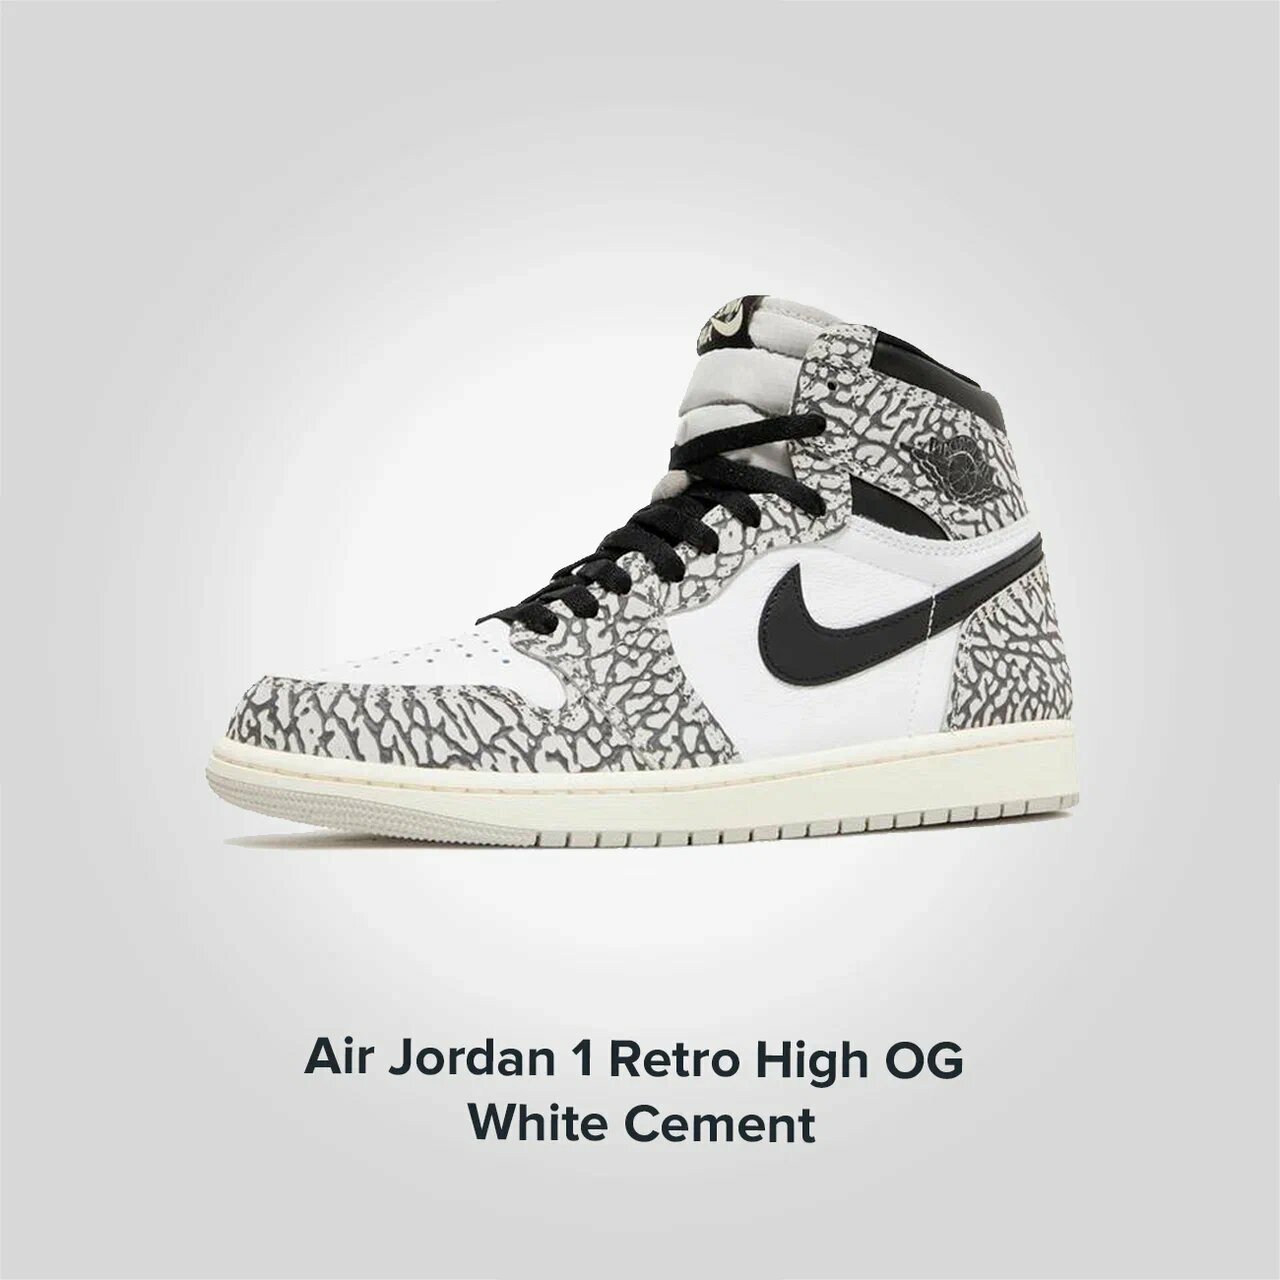 Jordan 1 Retro High OG White Cement